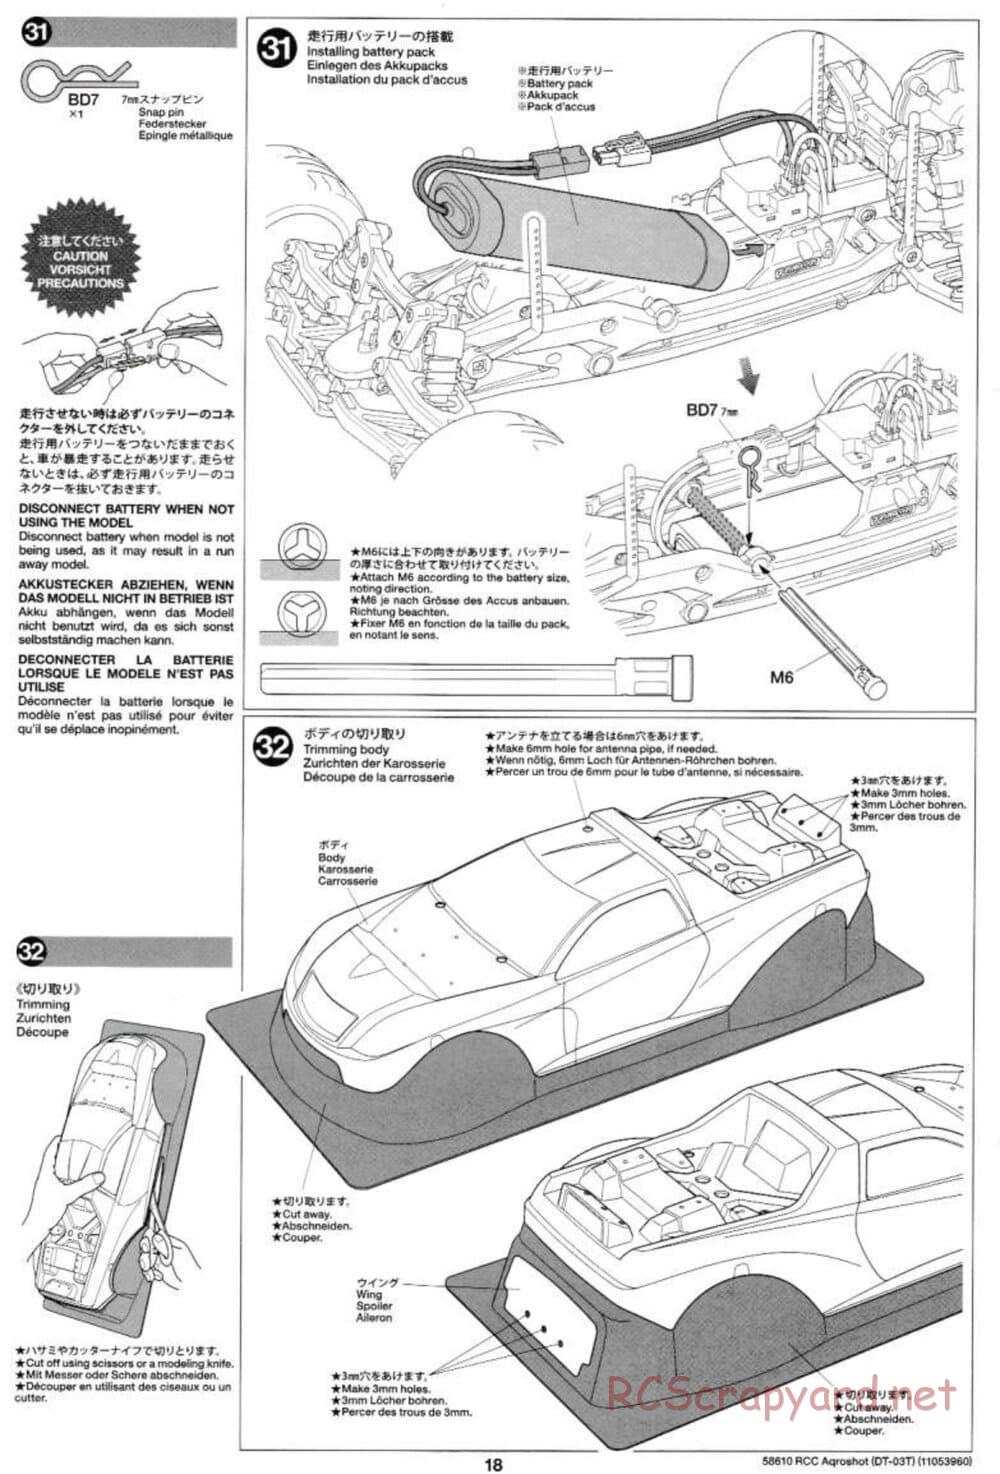 Tamiya - Aqroshot Chassis - Manual - Page 18